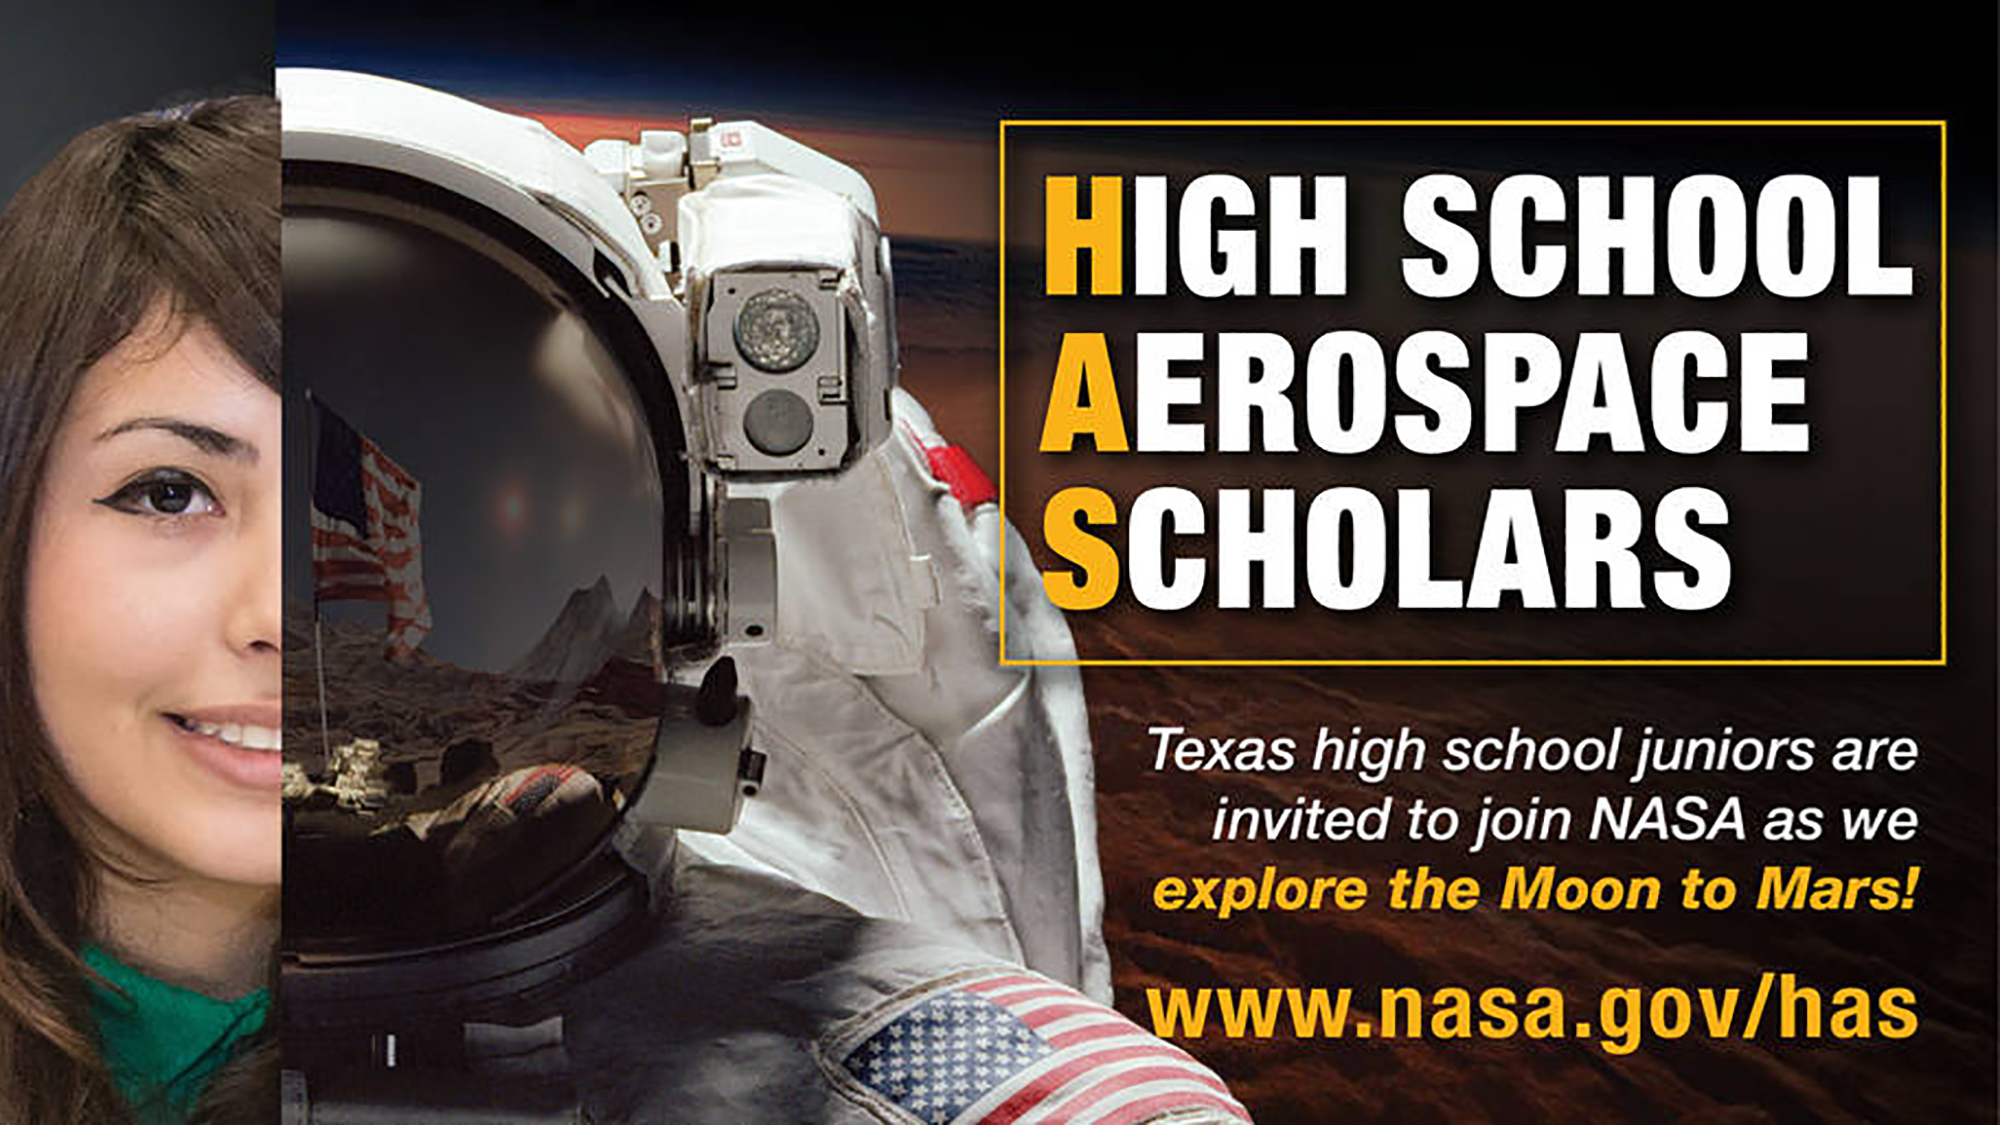 女高中生，宇航员，和读高中航空航天学者的文本。德克萨斯州的高中三年级学生被邀请加入美国宇航局，一起探索月球到火星!www.nasa.gov已经